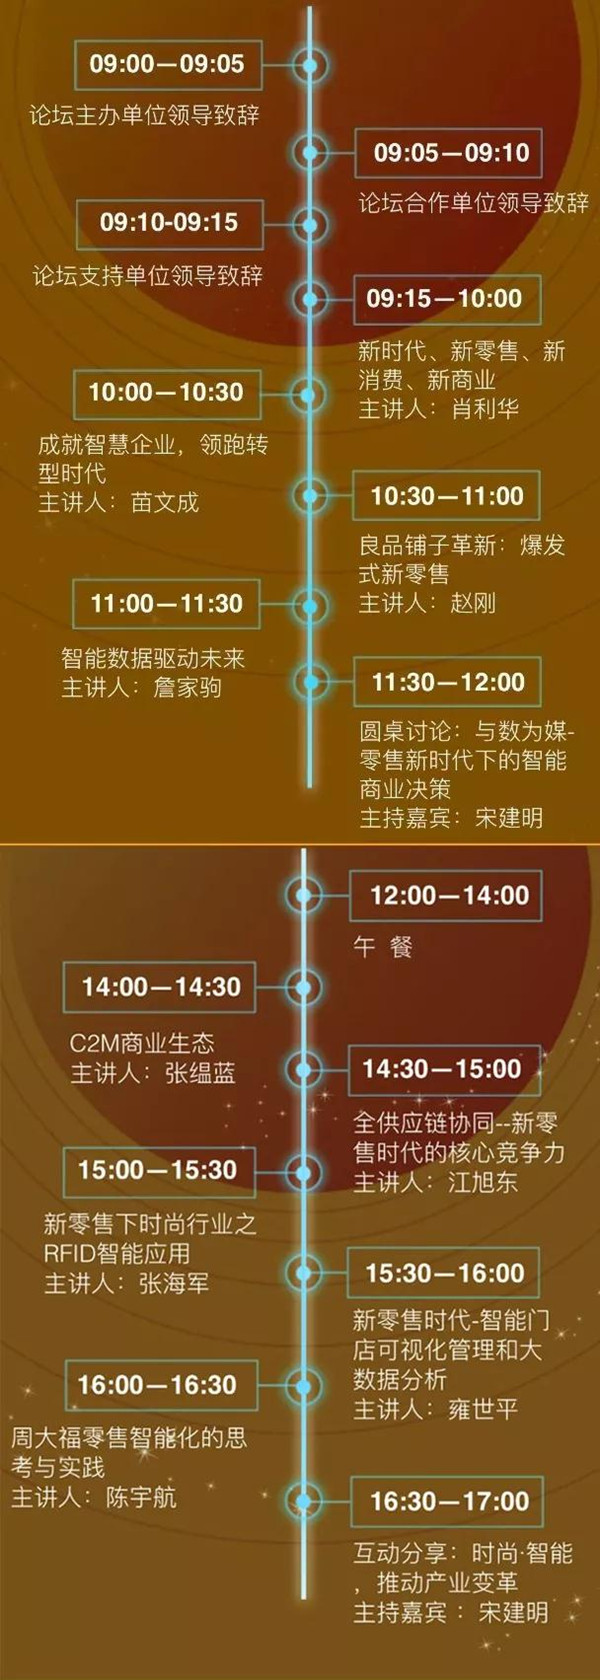 四川大学商学院×丽晶软件，智慧商业高峰论坛即将开幕14.jpg